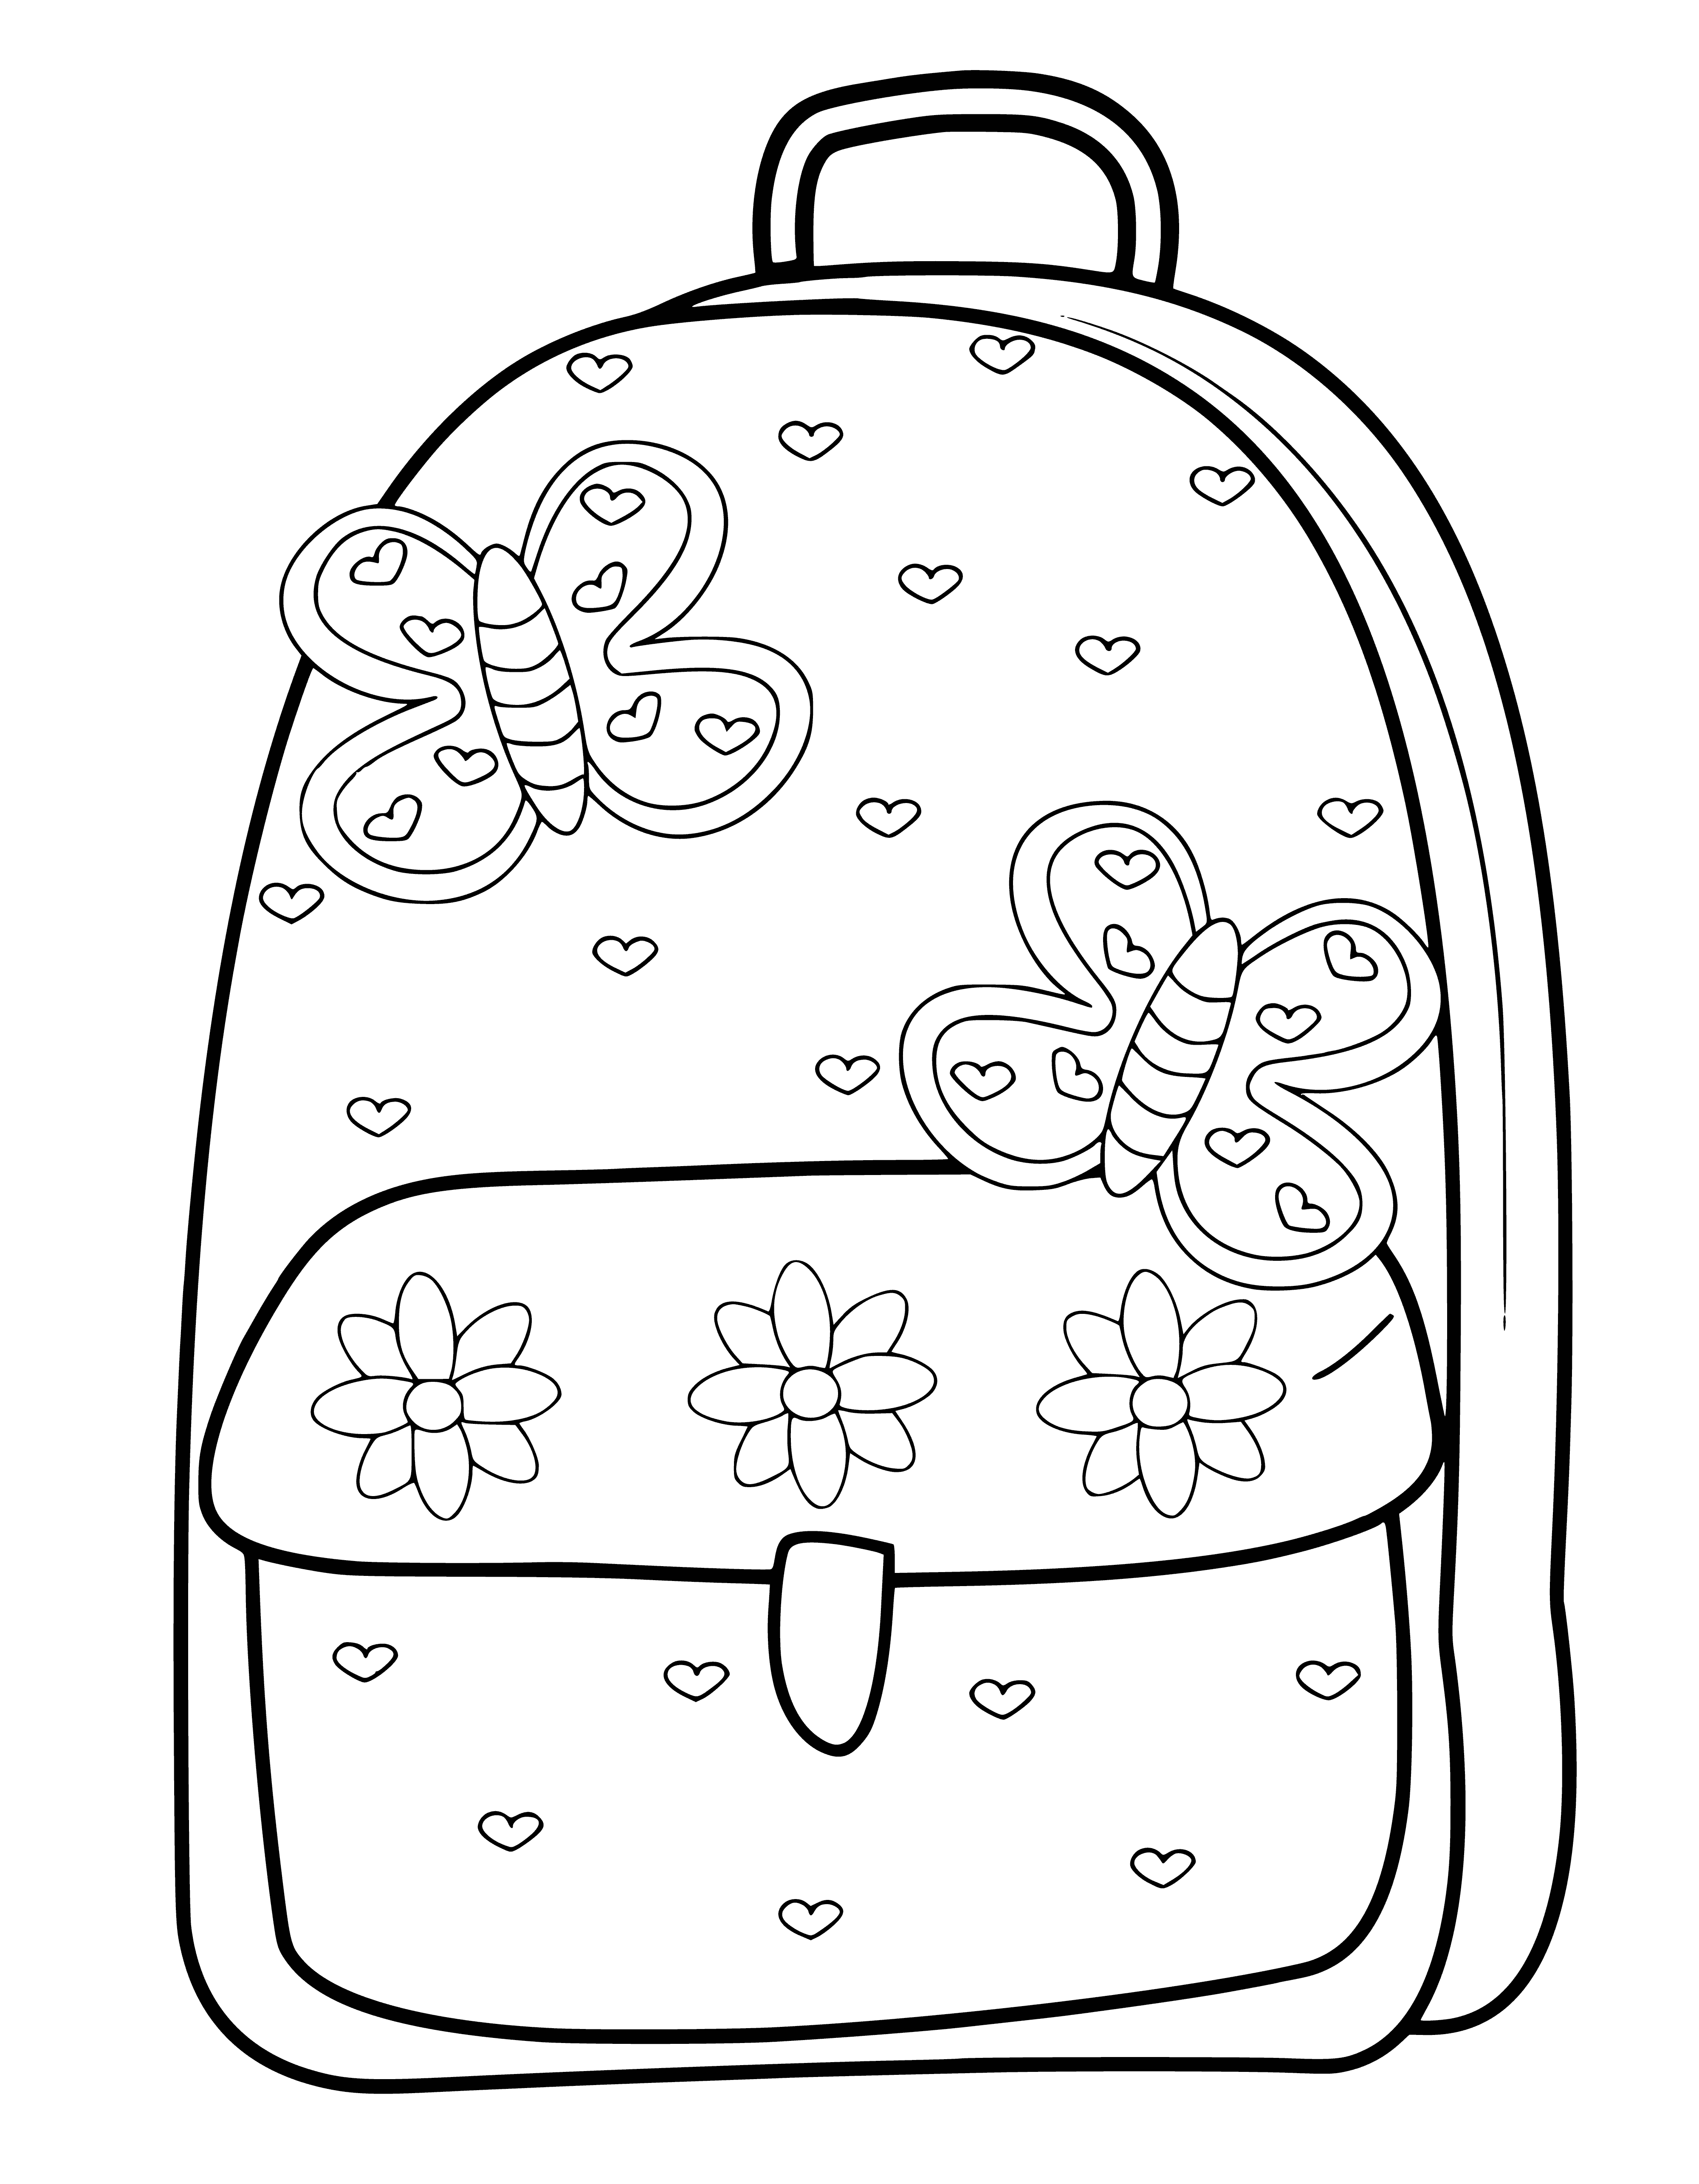 Okul çantası boyama sayfası